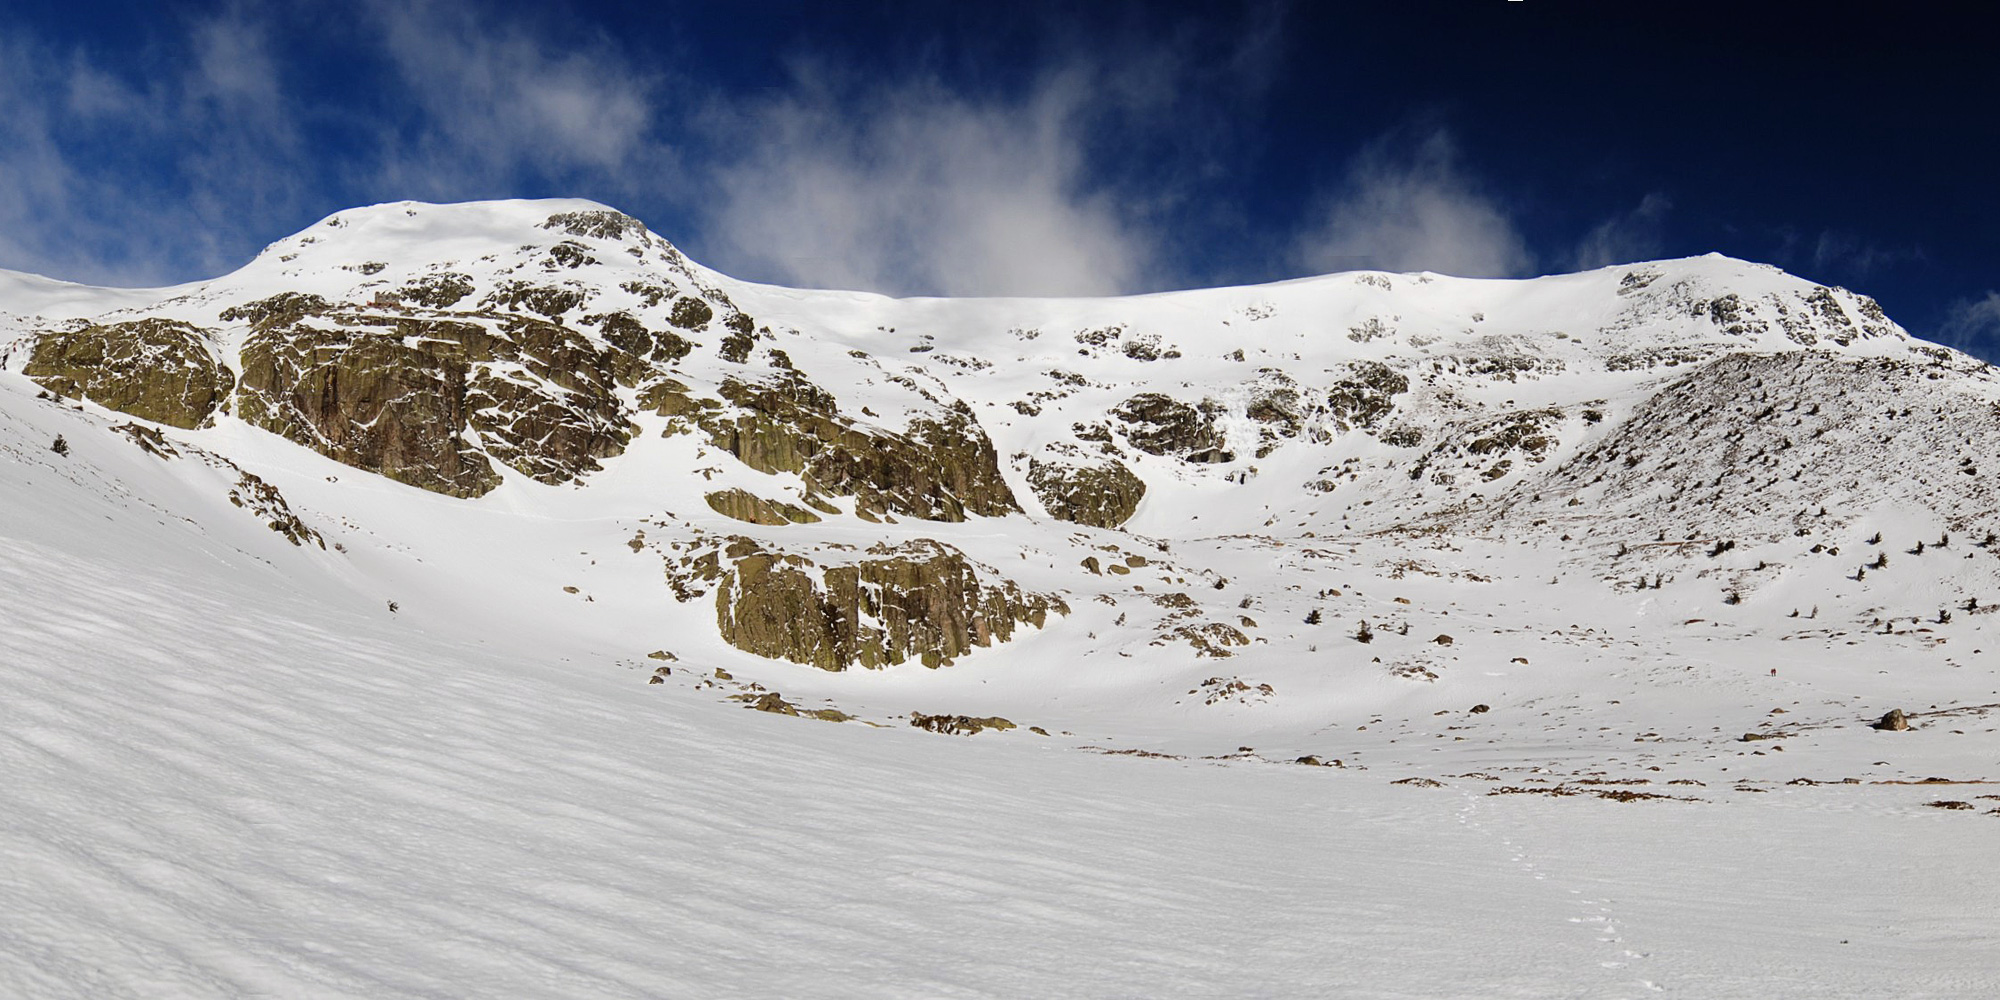 Tanto la Hermana Mayor (Izquierda) como el Pico de Peñalara (derecha) delimitan la cubeta claciar en la que se asienta la Laguna Grande de Peñalara